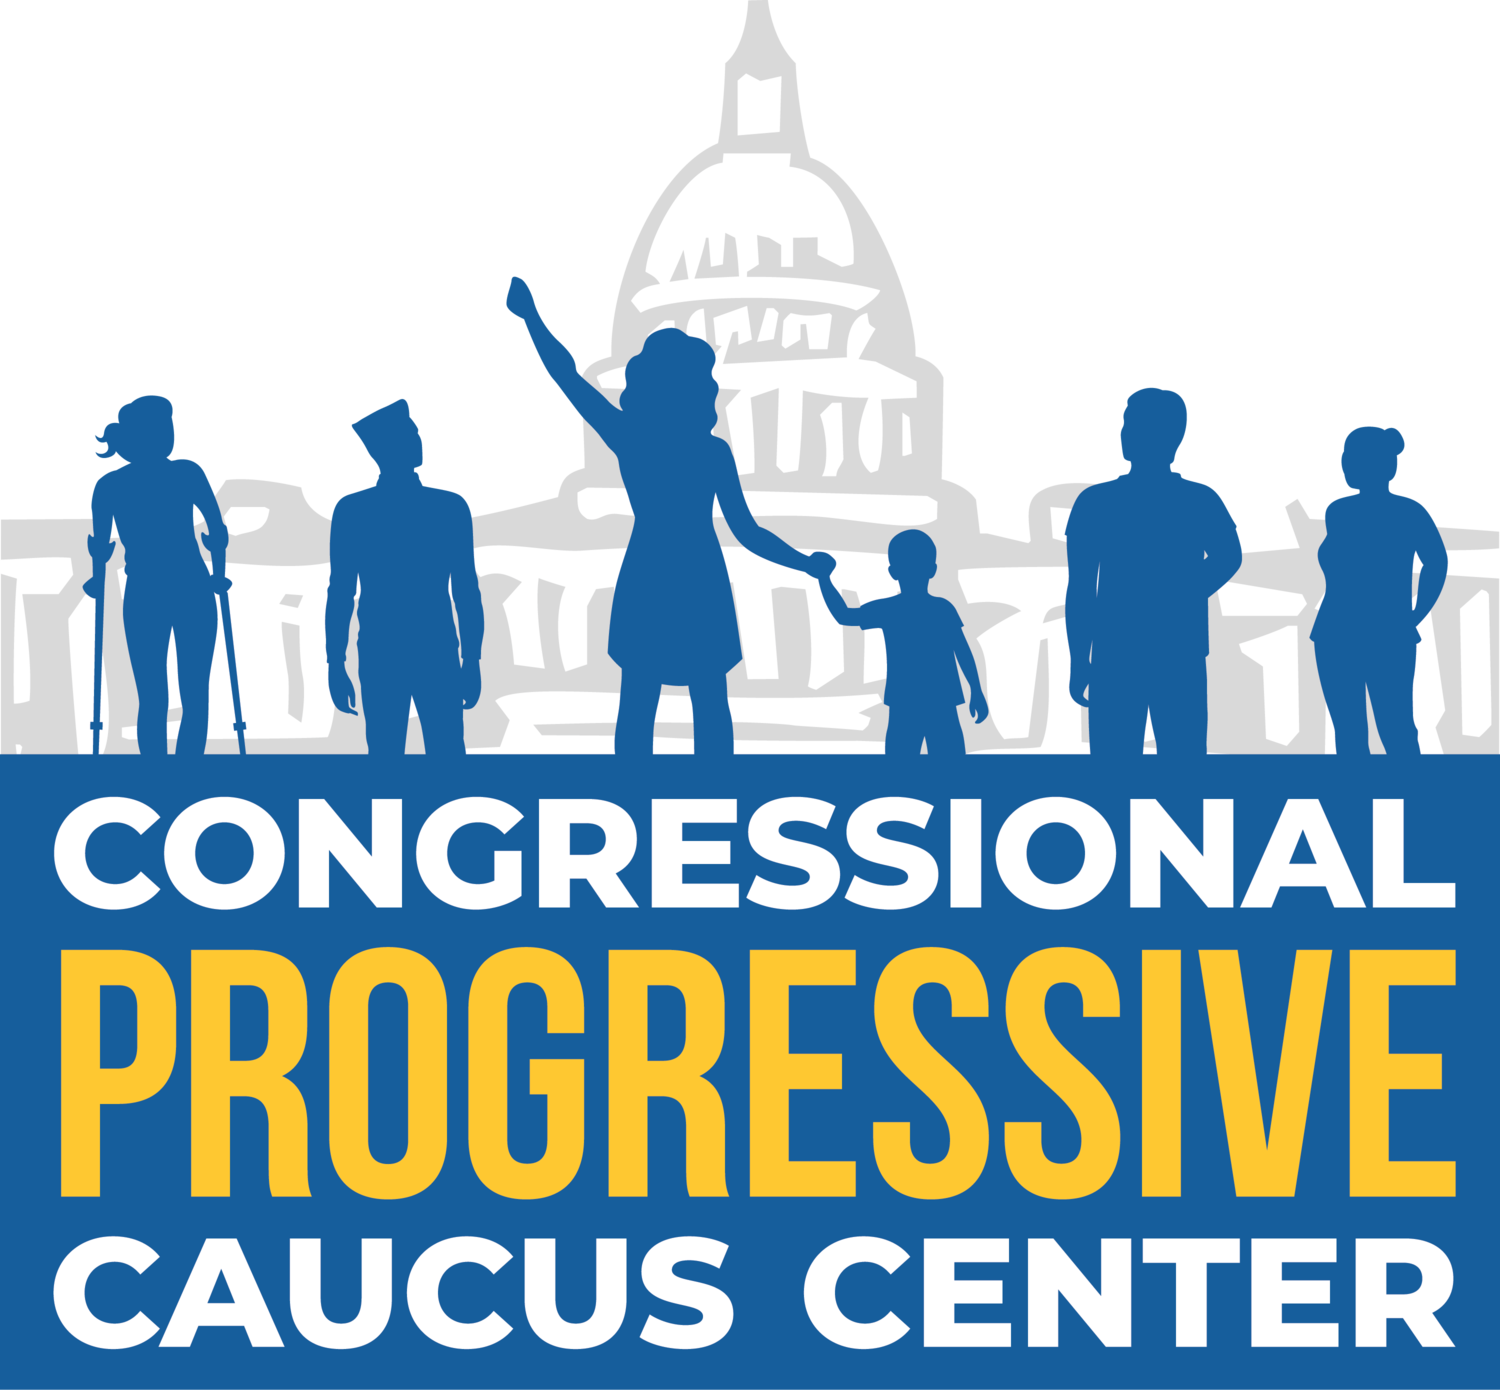 Progressive Caucus Center